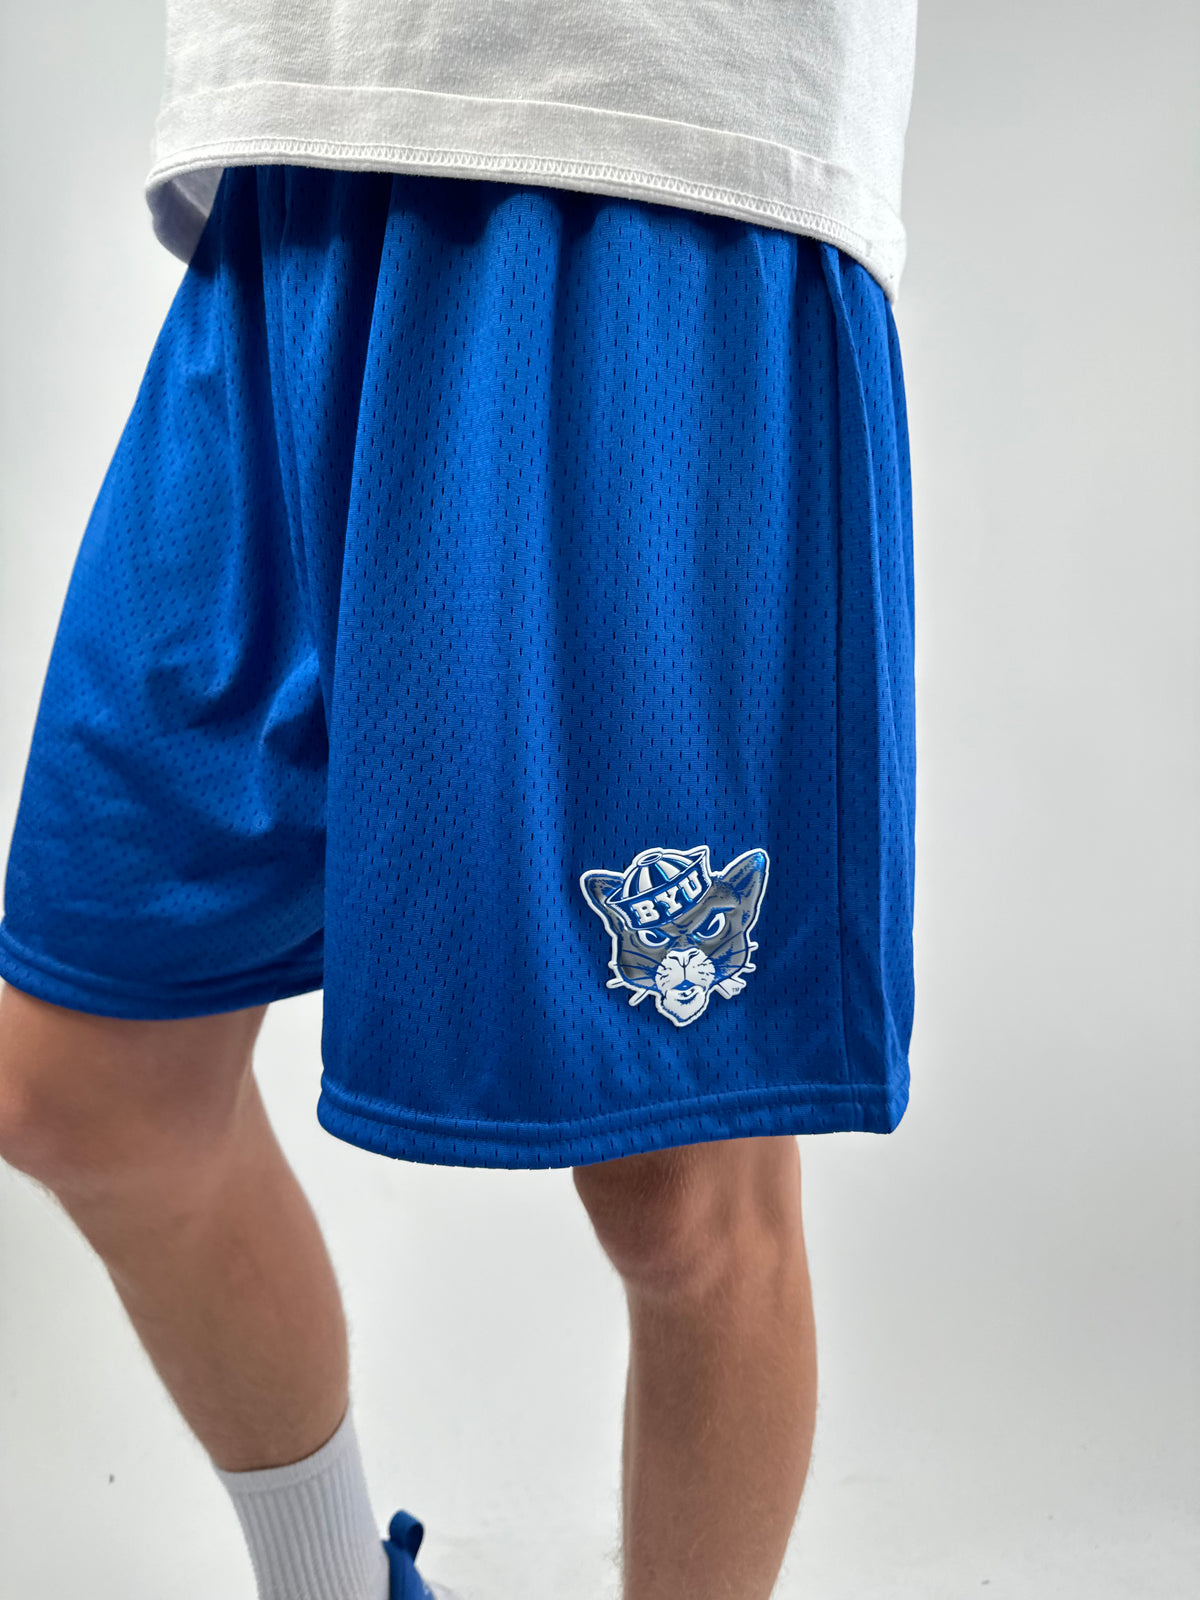 Mesh Shorts with Vintage BYU Sailor Cougar Domed Emblem